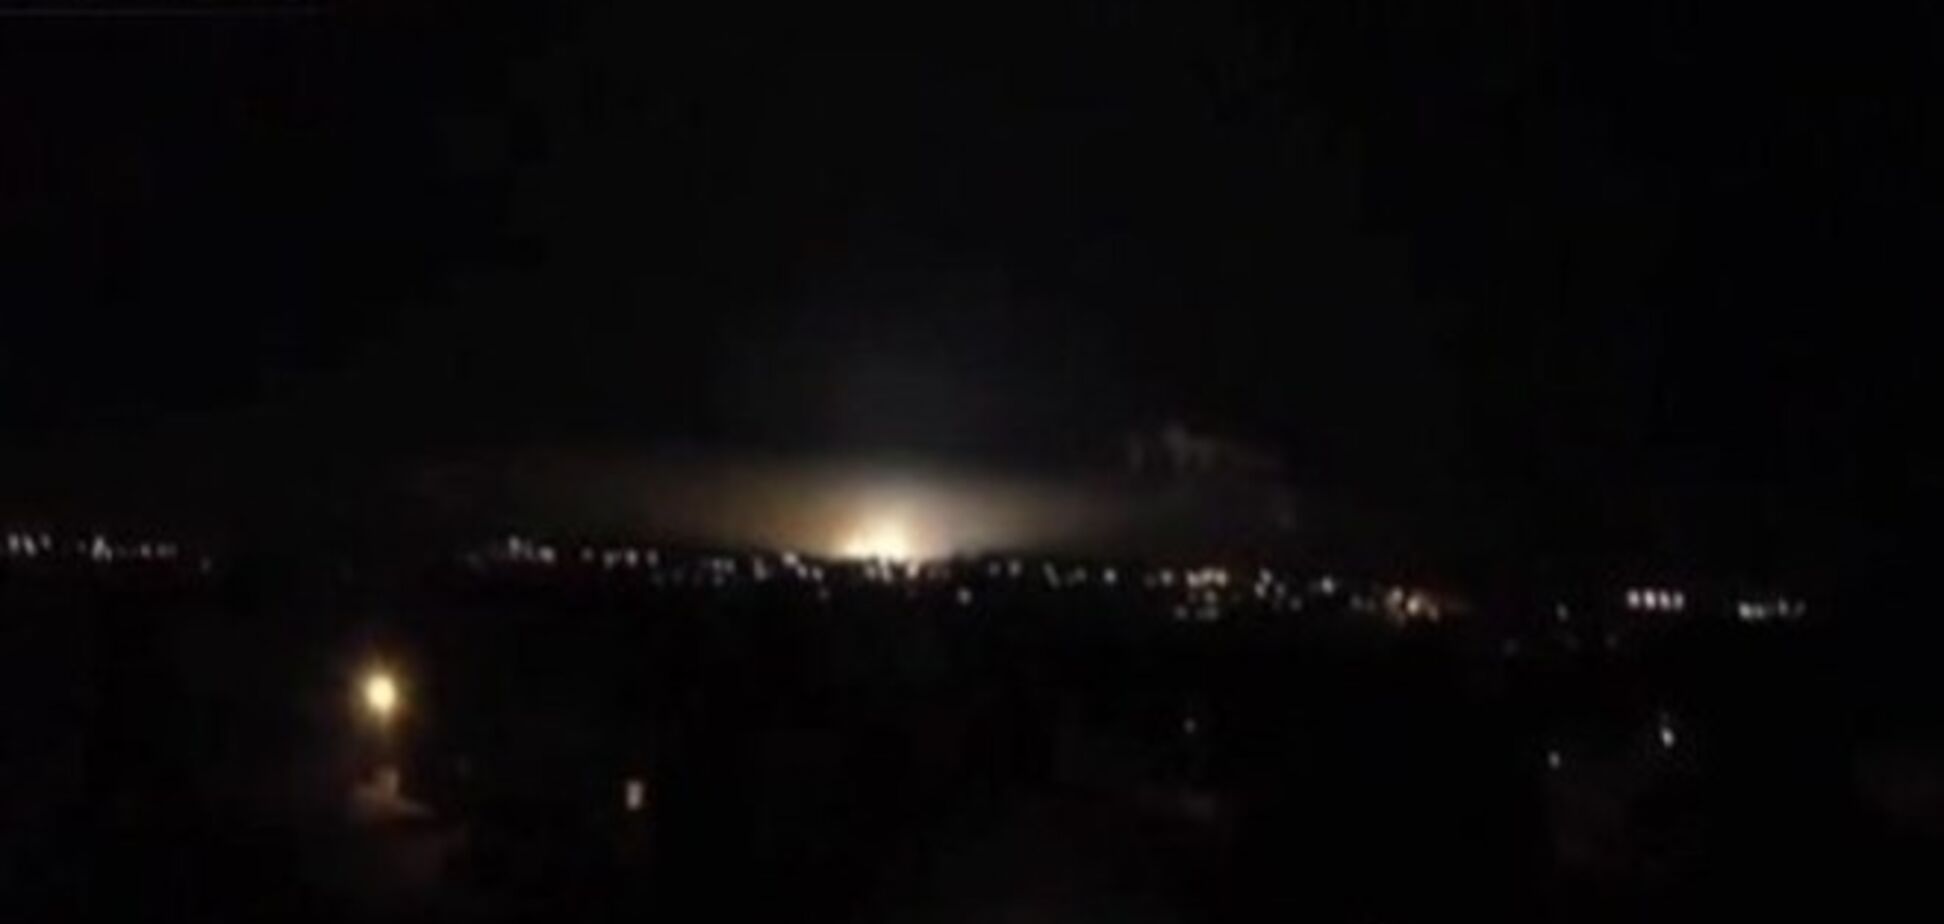 В Курске взорвалась электростанция, рядом находится АЭС: опубликовано видео